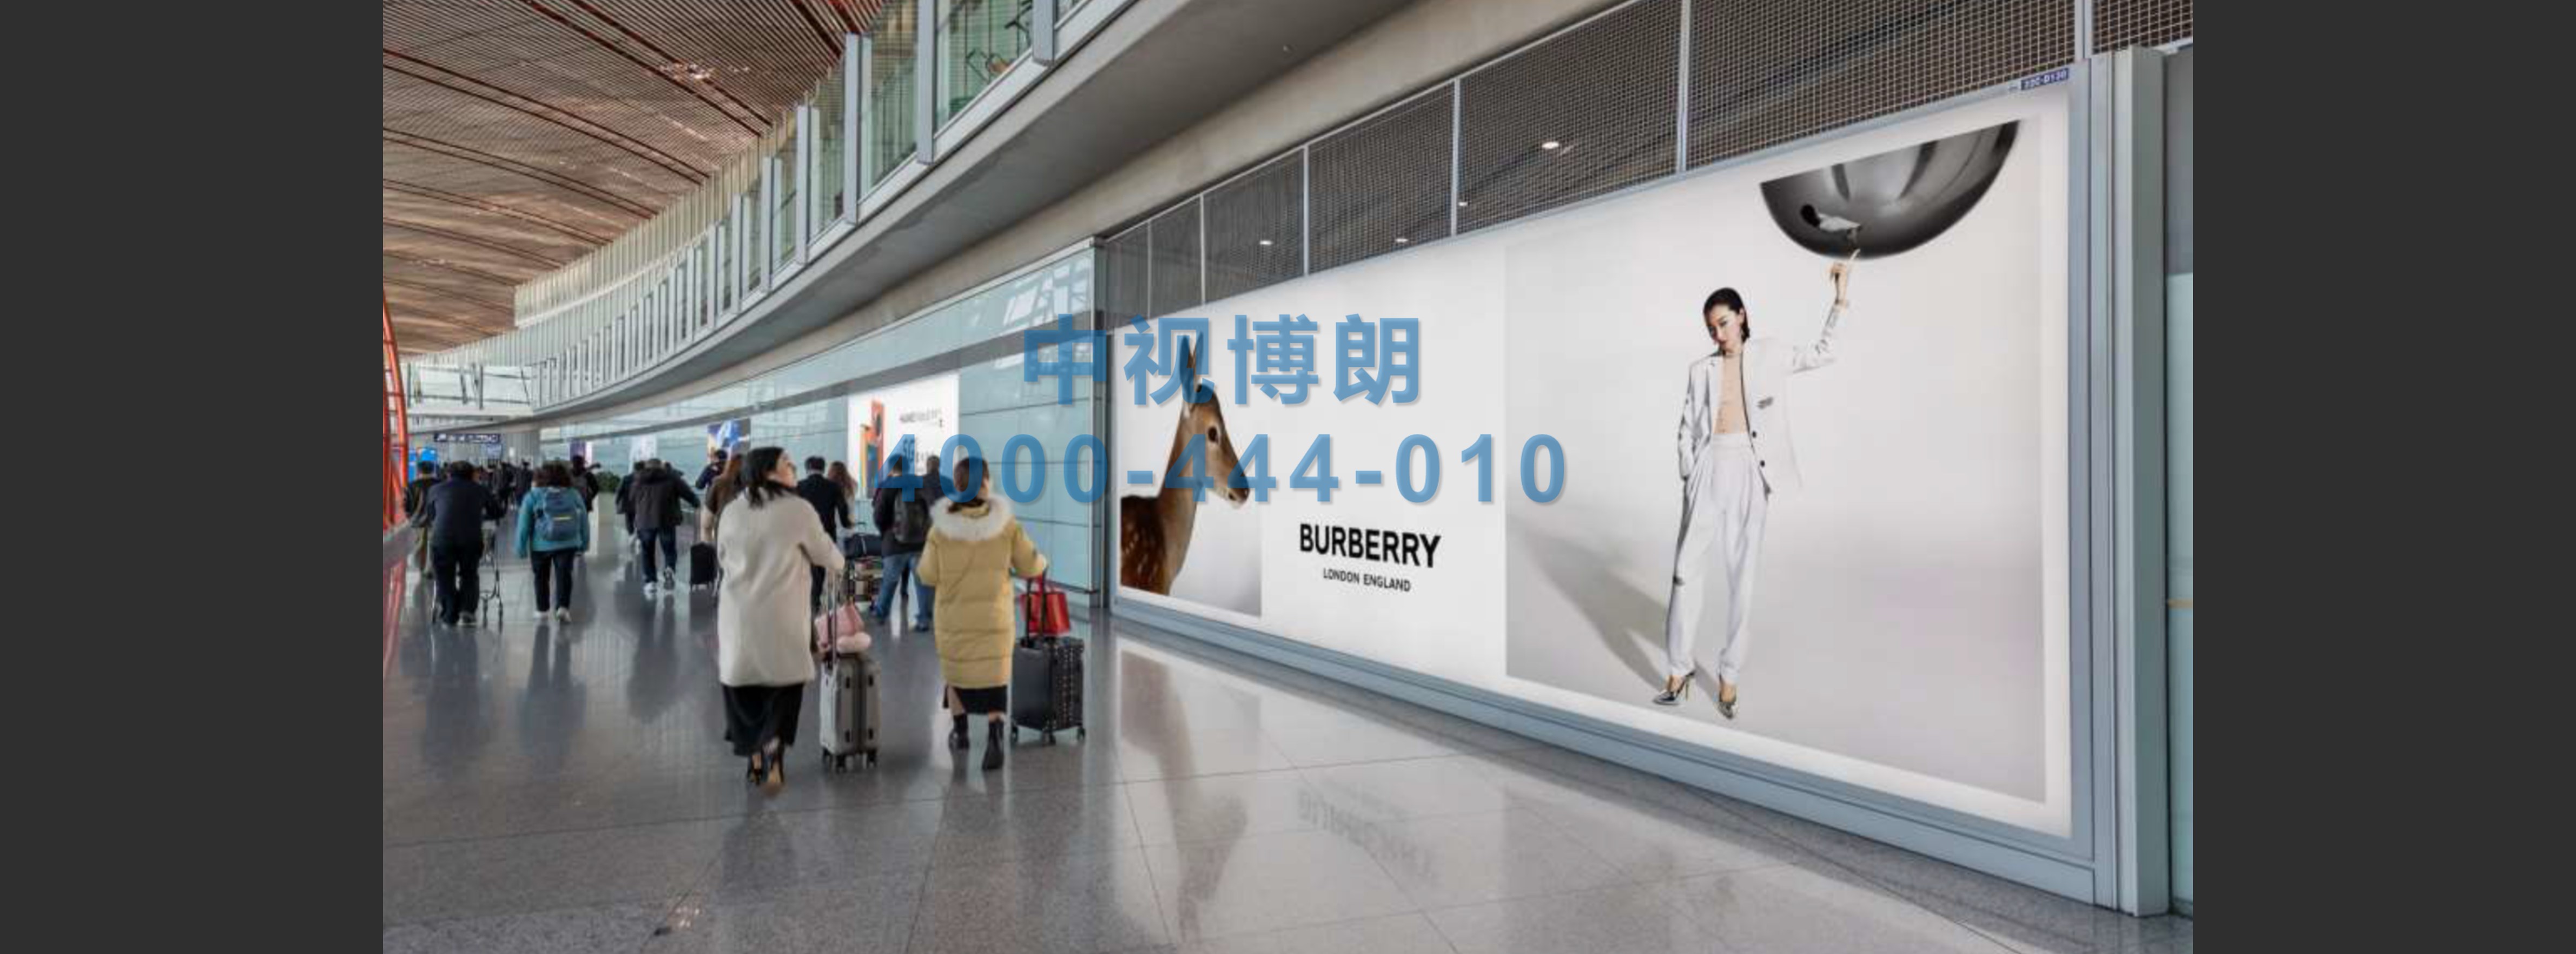 北京首都机场广告-T3C到达走廊落地灯箱